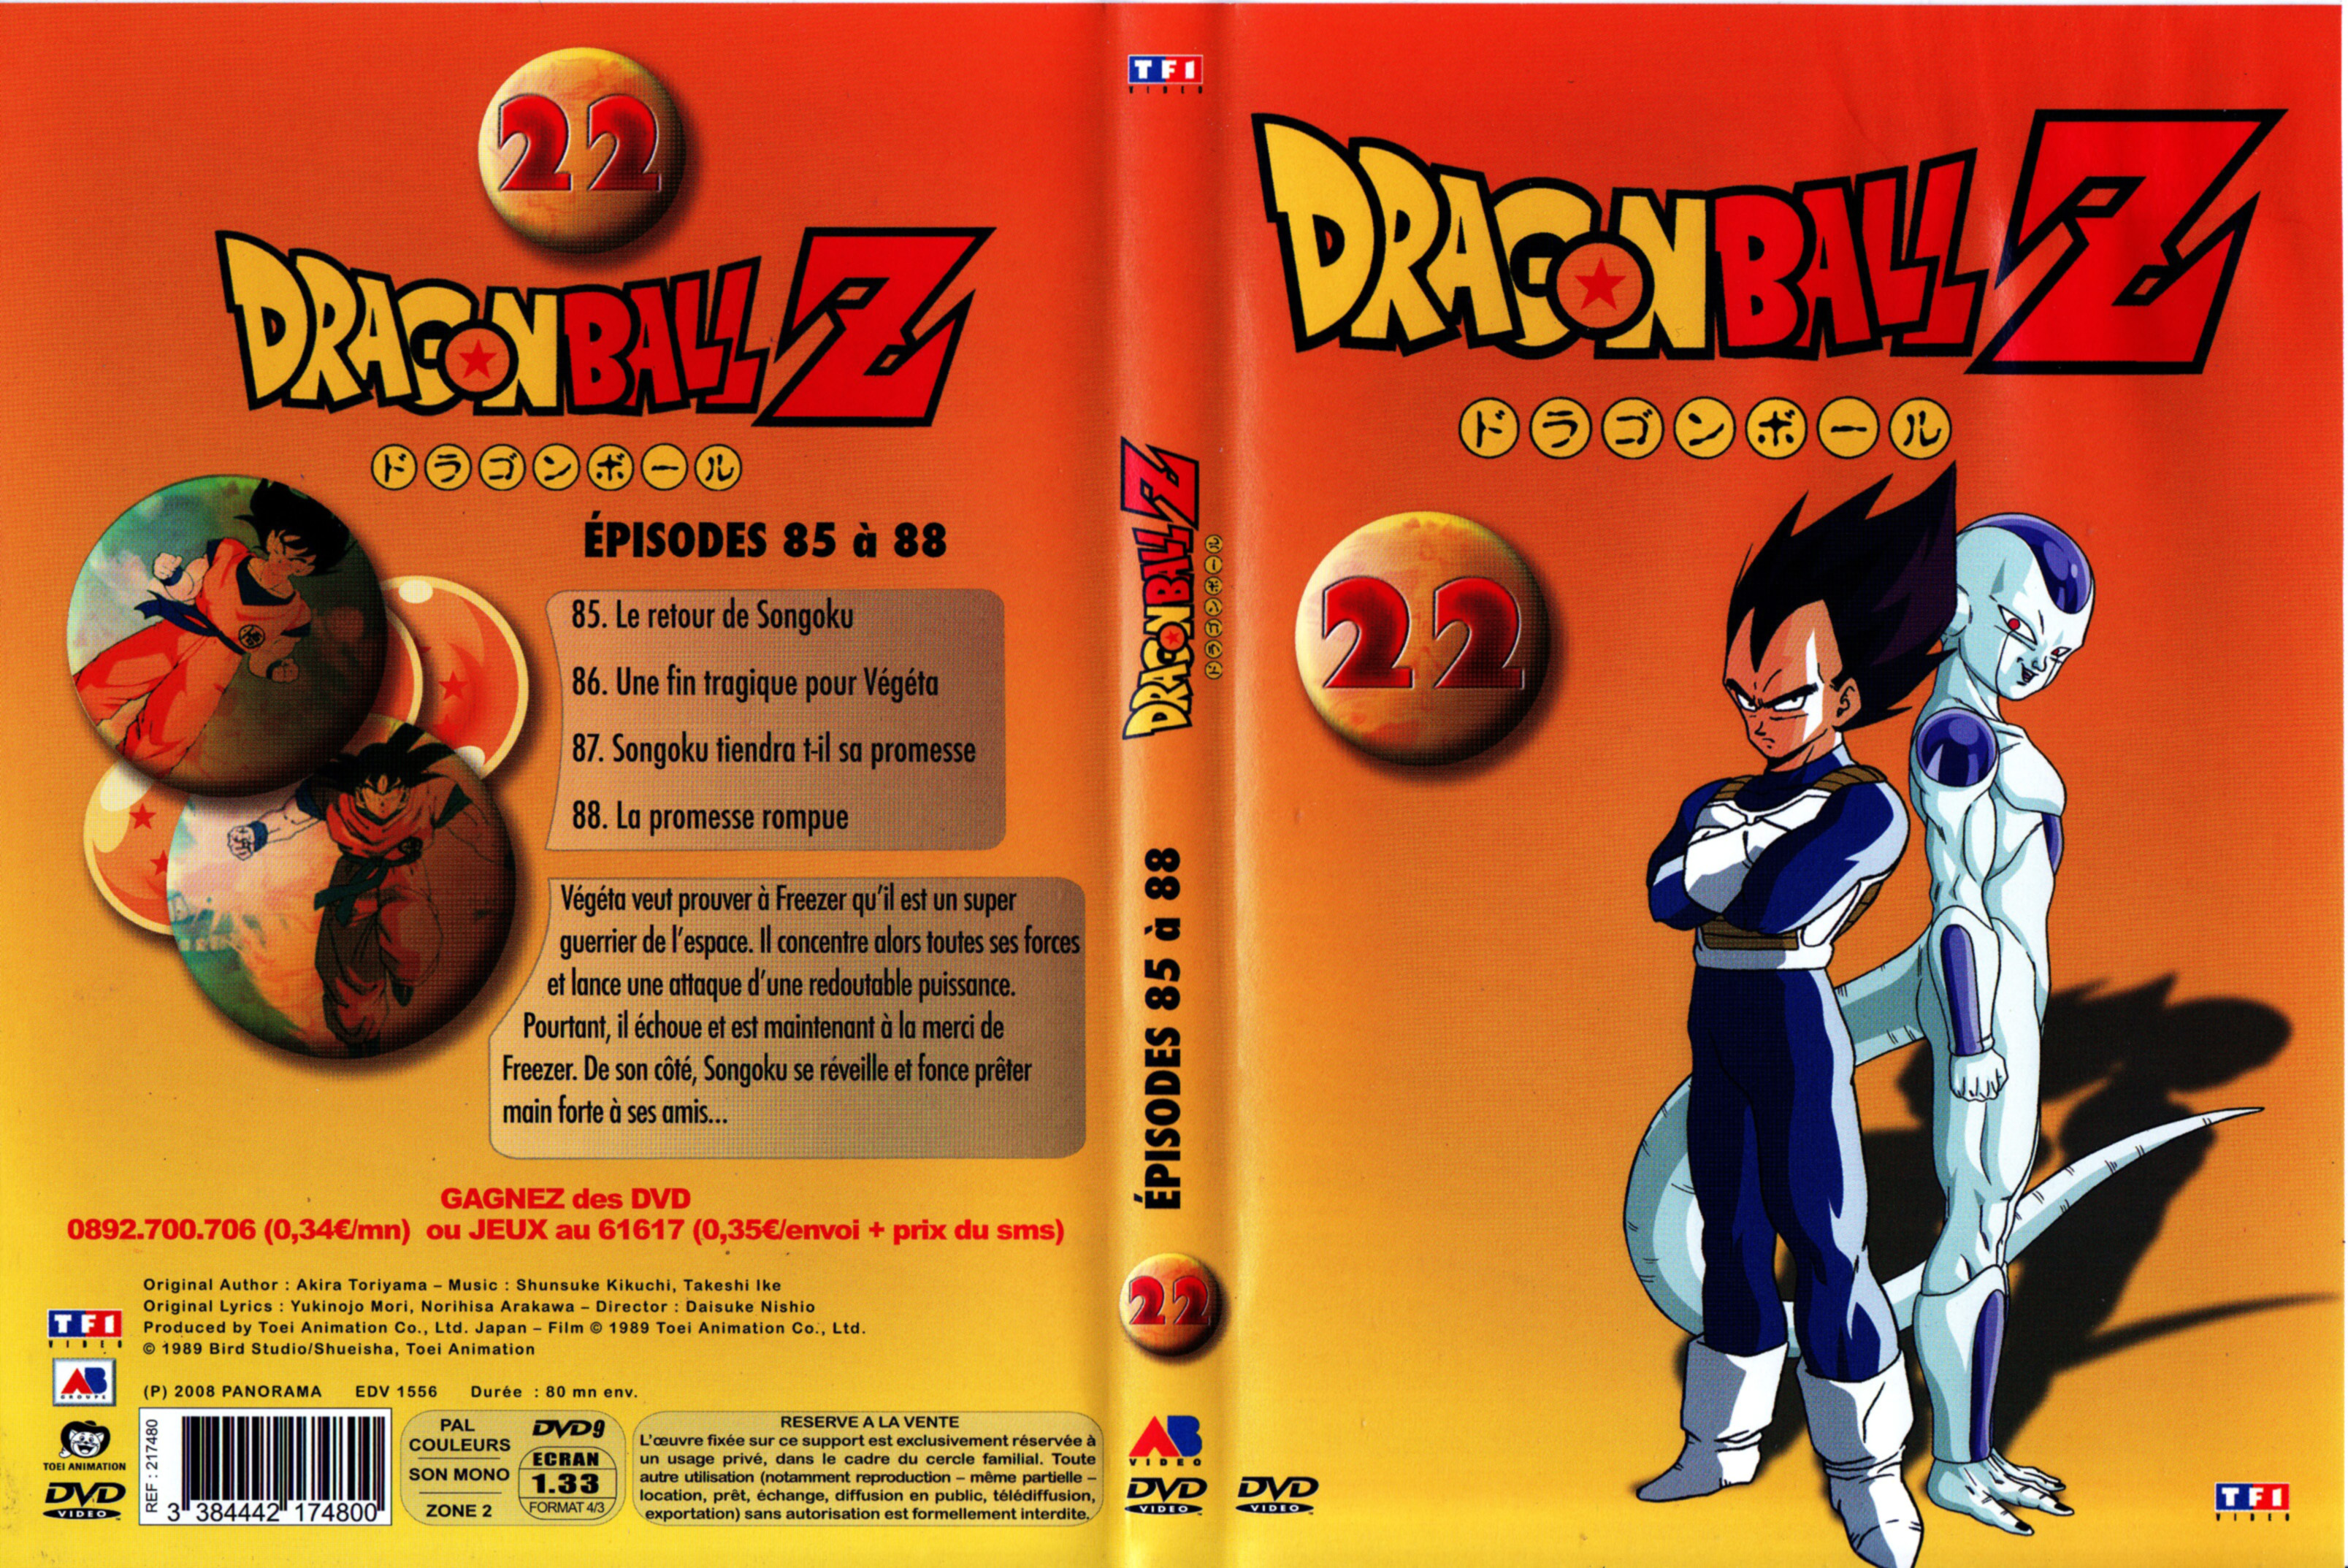 Jaquette DVD Dragon ball Z vol 22 v3